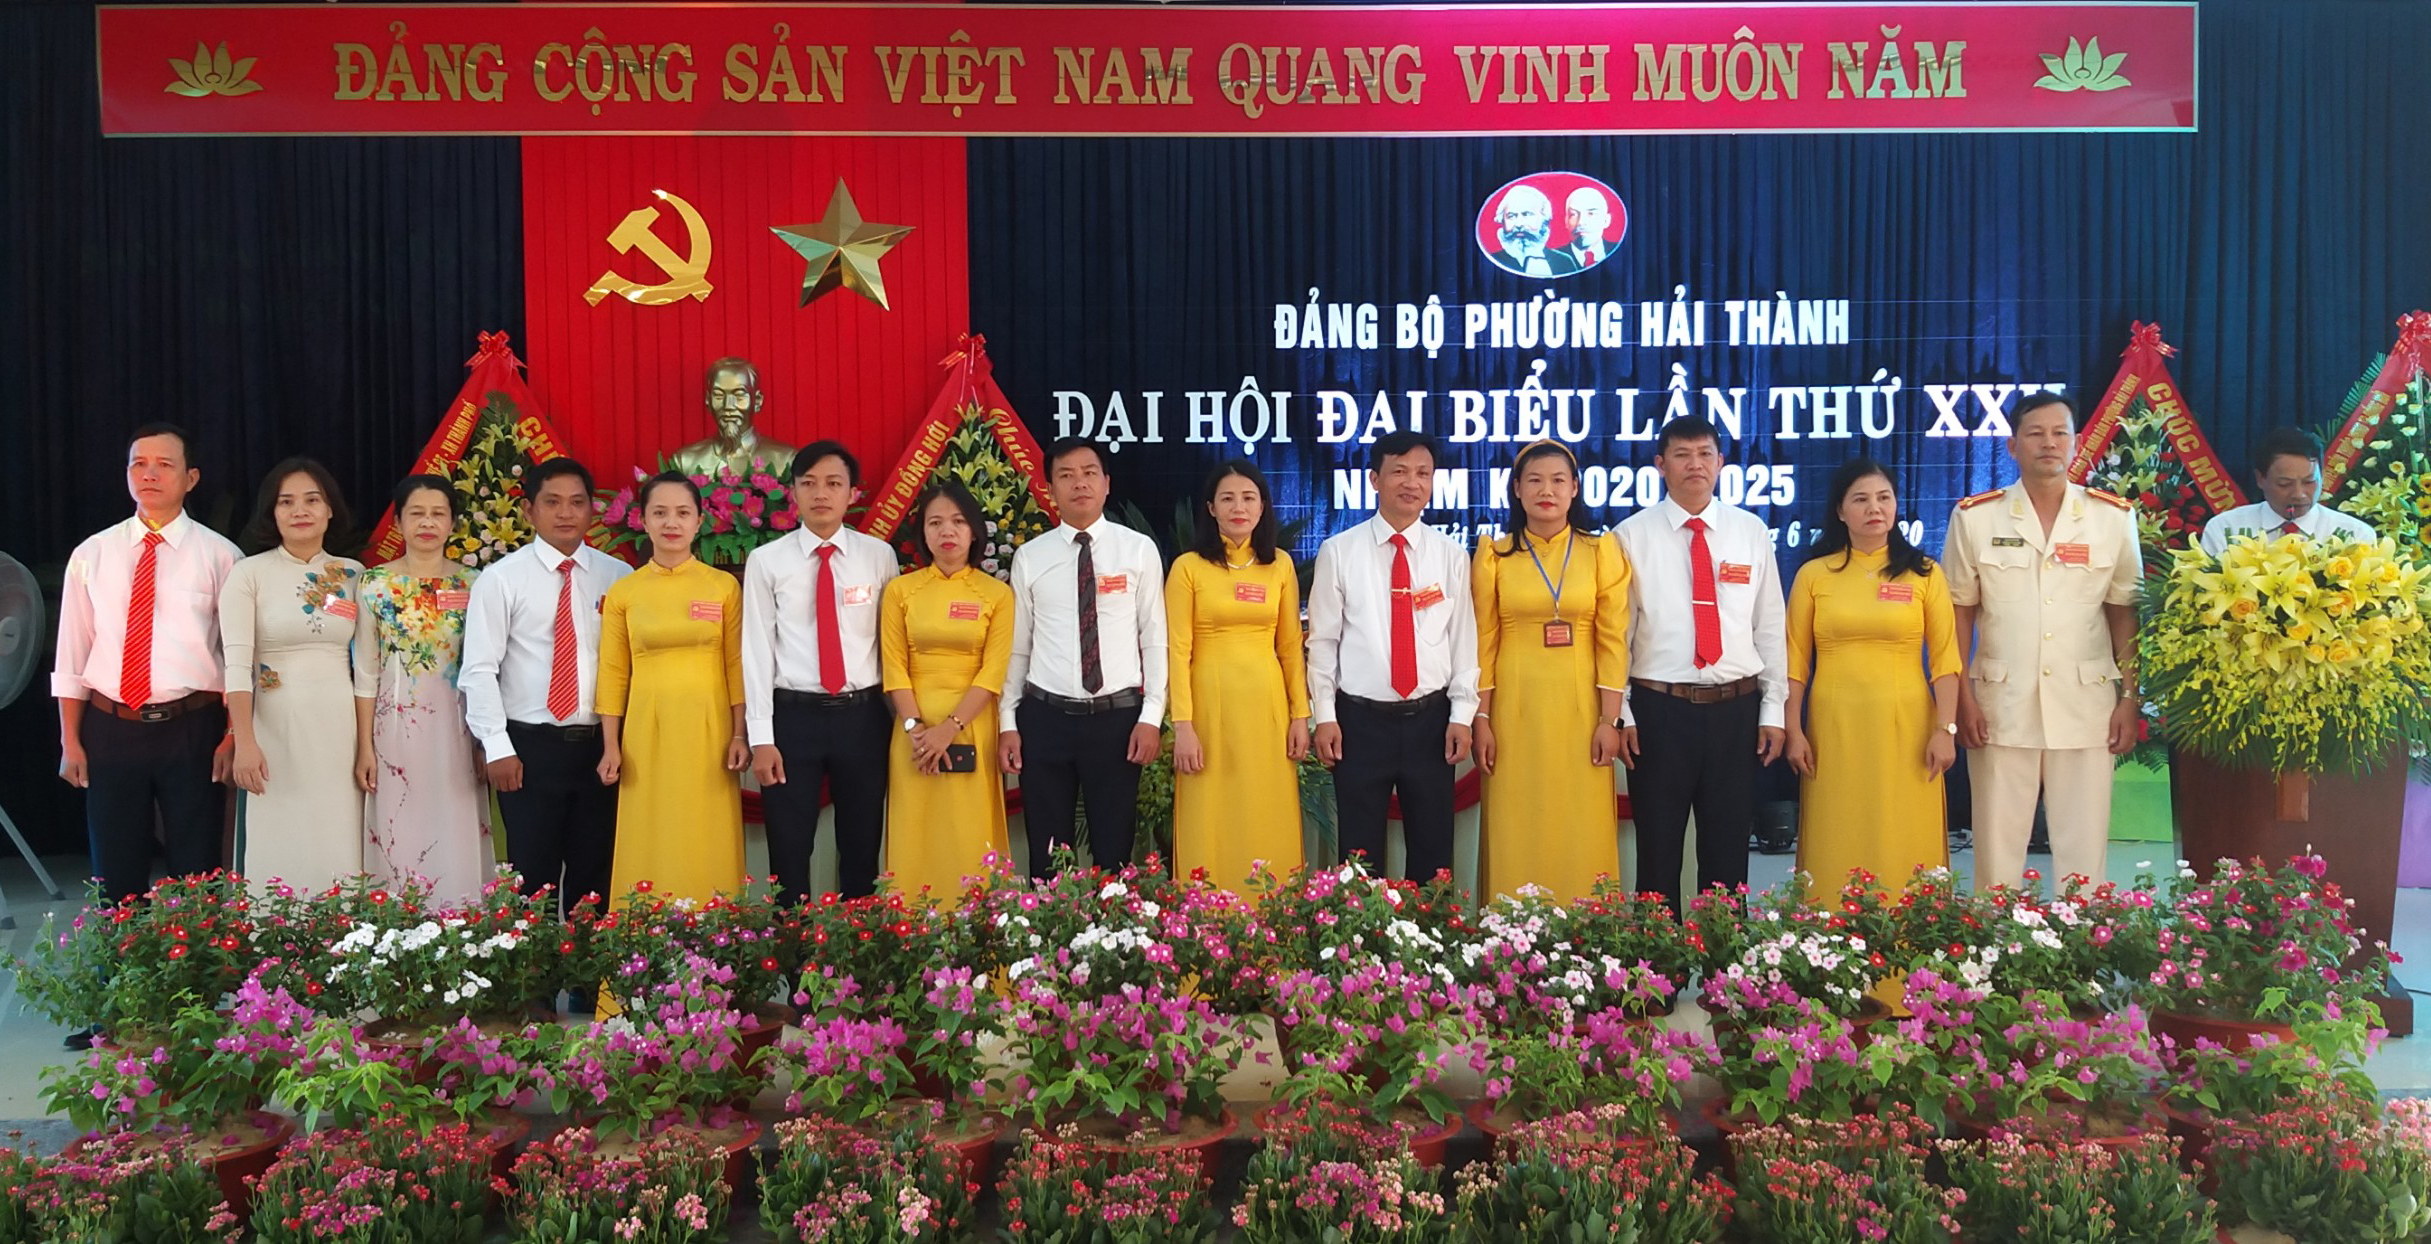 Ban chấp hành Đảng bộ phường Hải Thành nhiệm kỳ 2020-2025 ra mắt đại hội